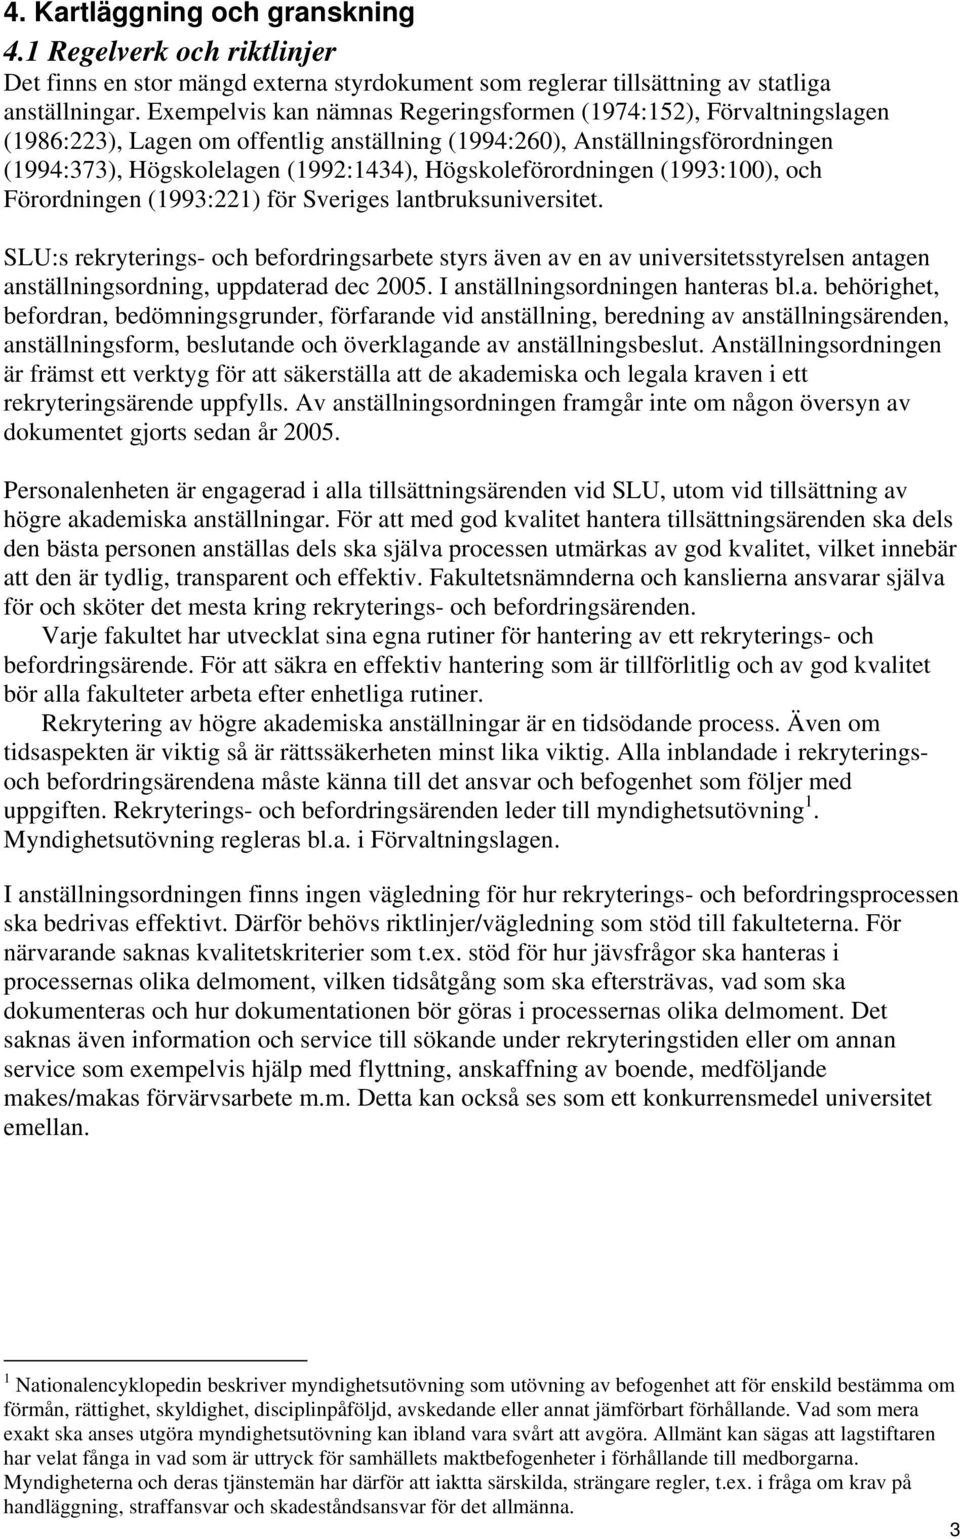 Högskoleförordningen (1993:100), och Förordningen (1993:221) för Sveriges lantbruksuniversitet.